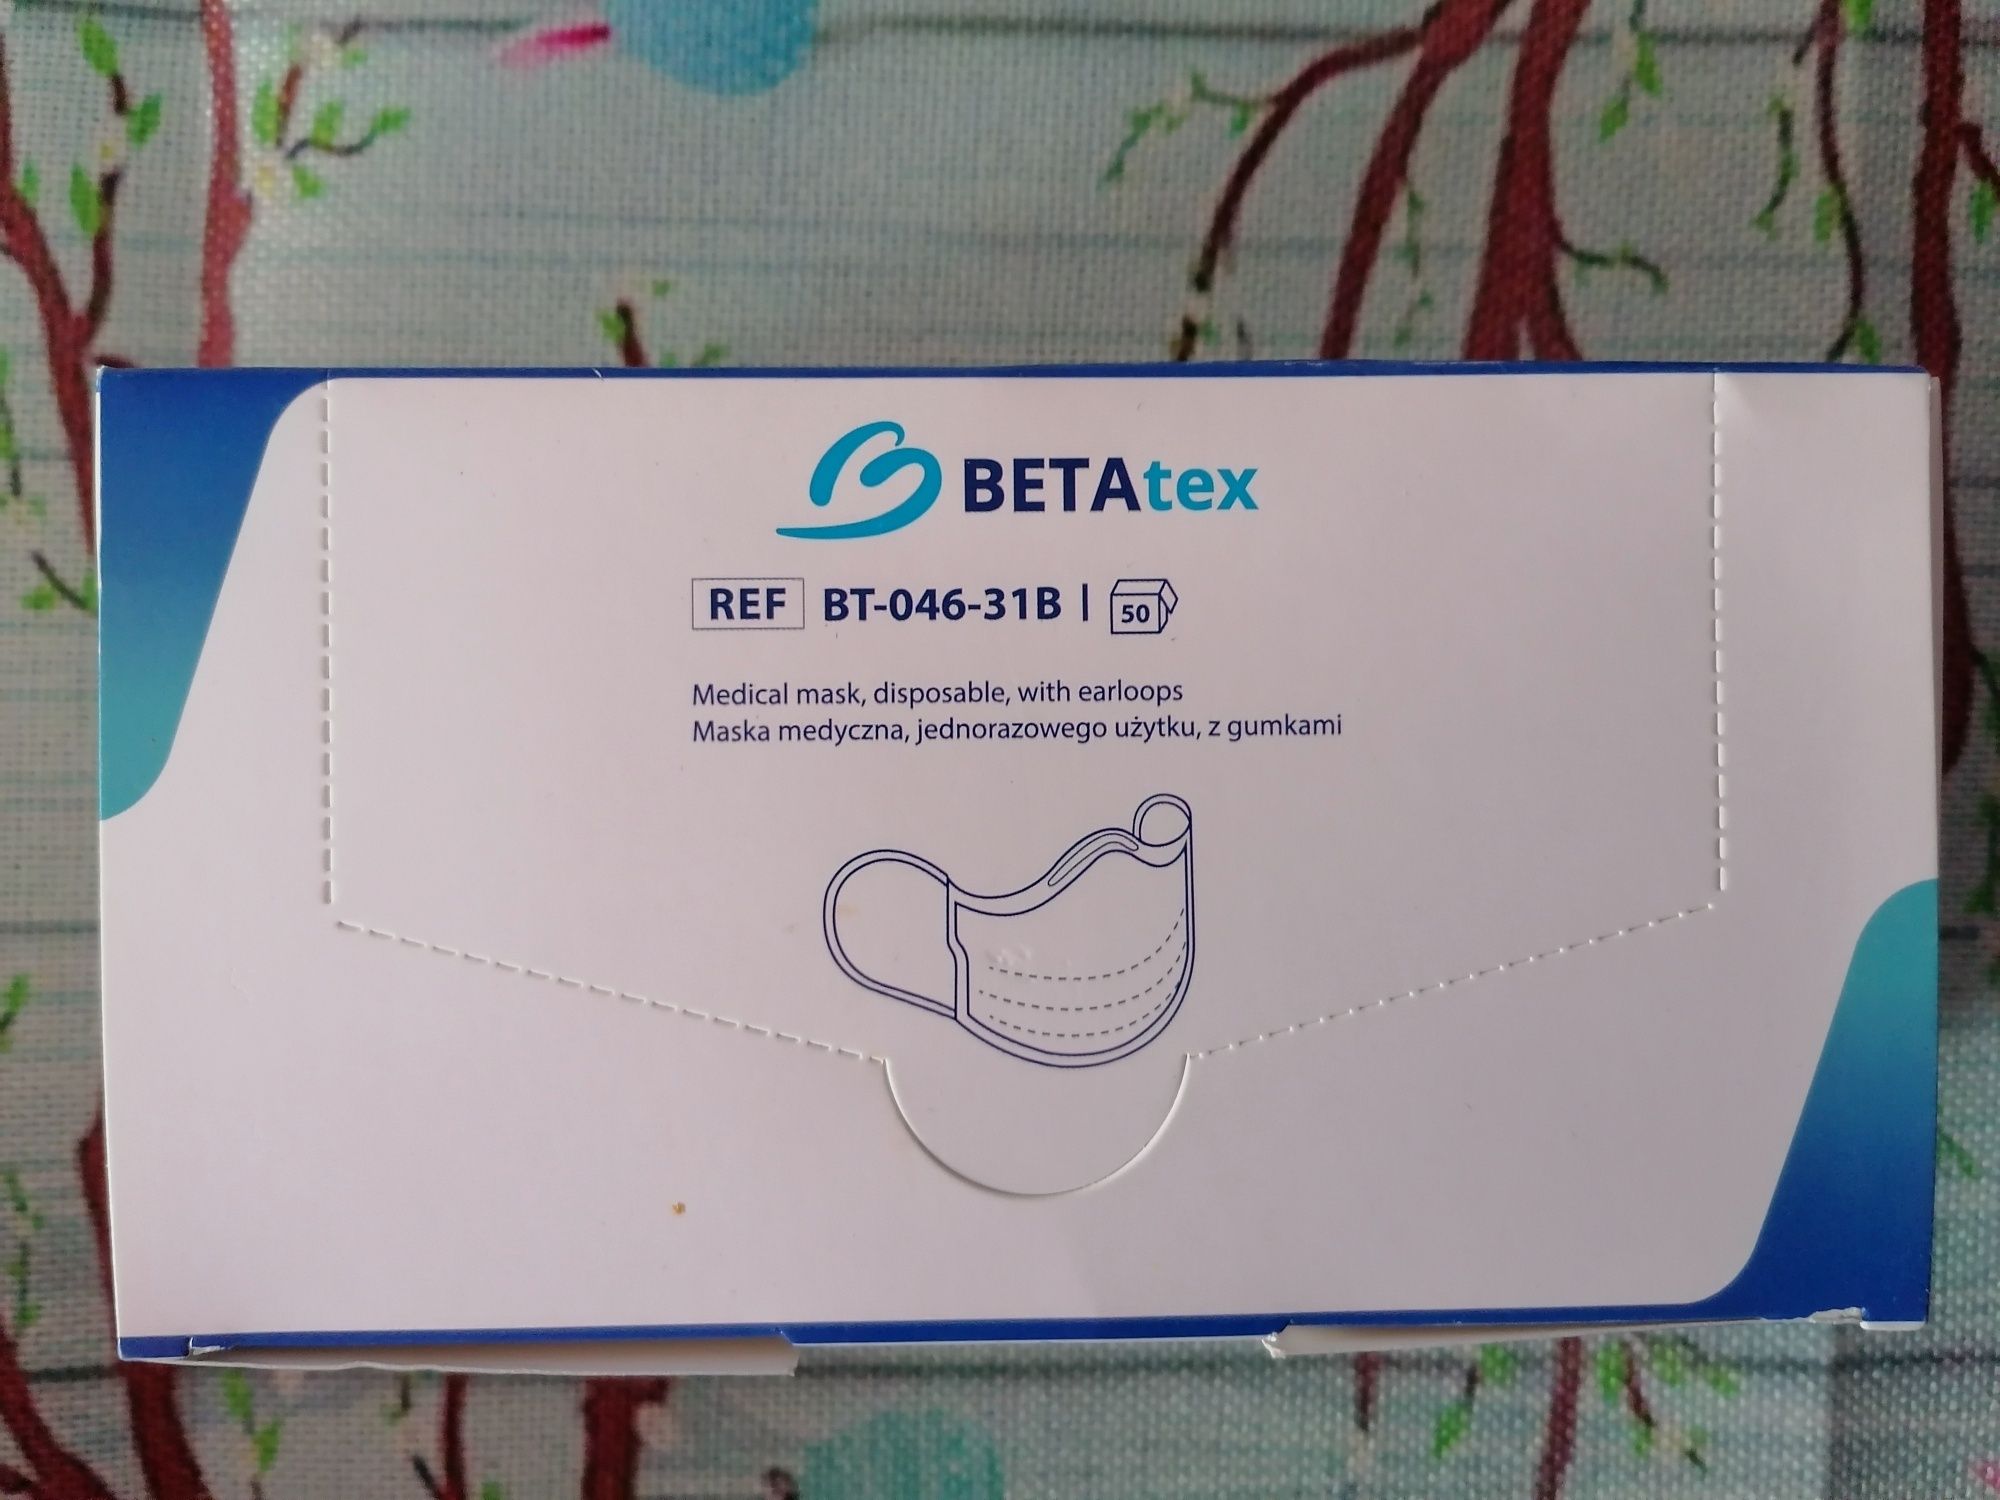 Maska medyczna jednorazowego użytku z gumkami Betatex